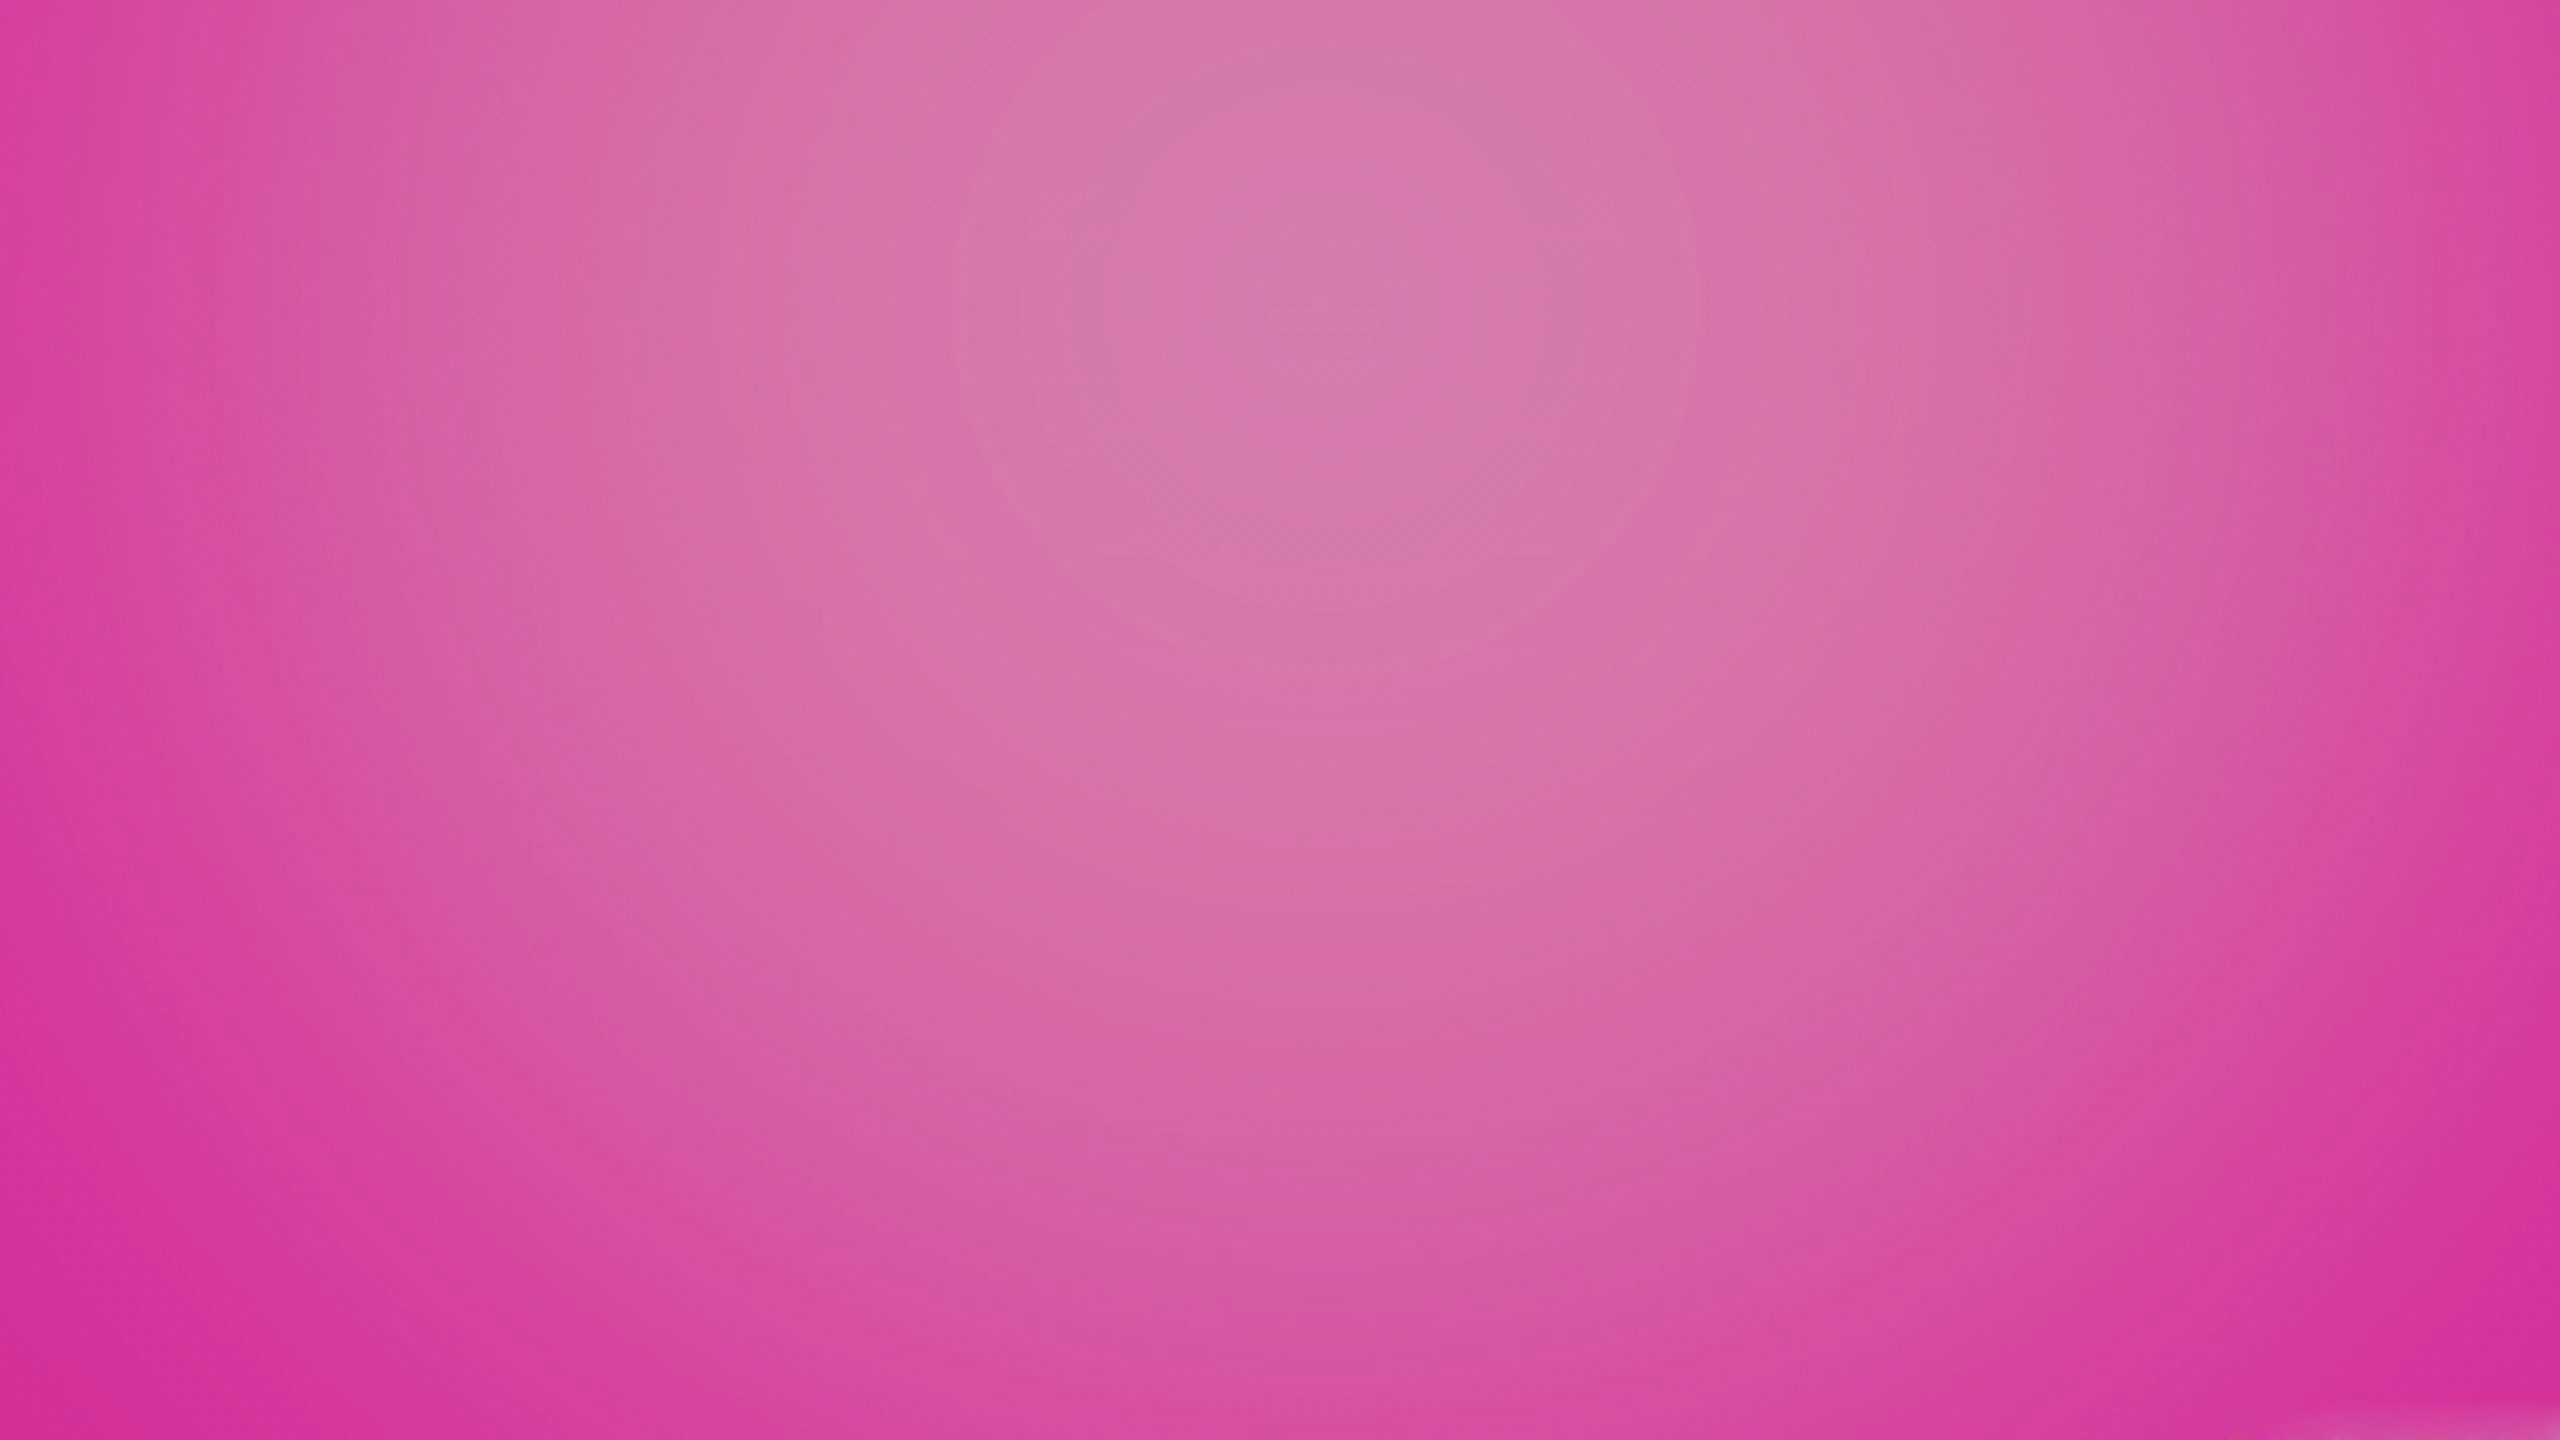 Desktop Hot Pink Aesthetic Wallpaper 1